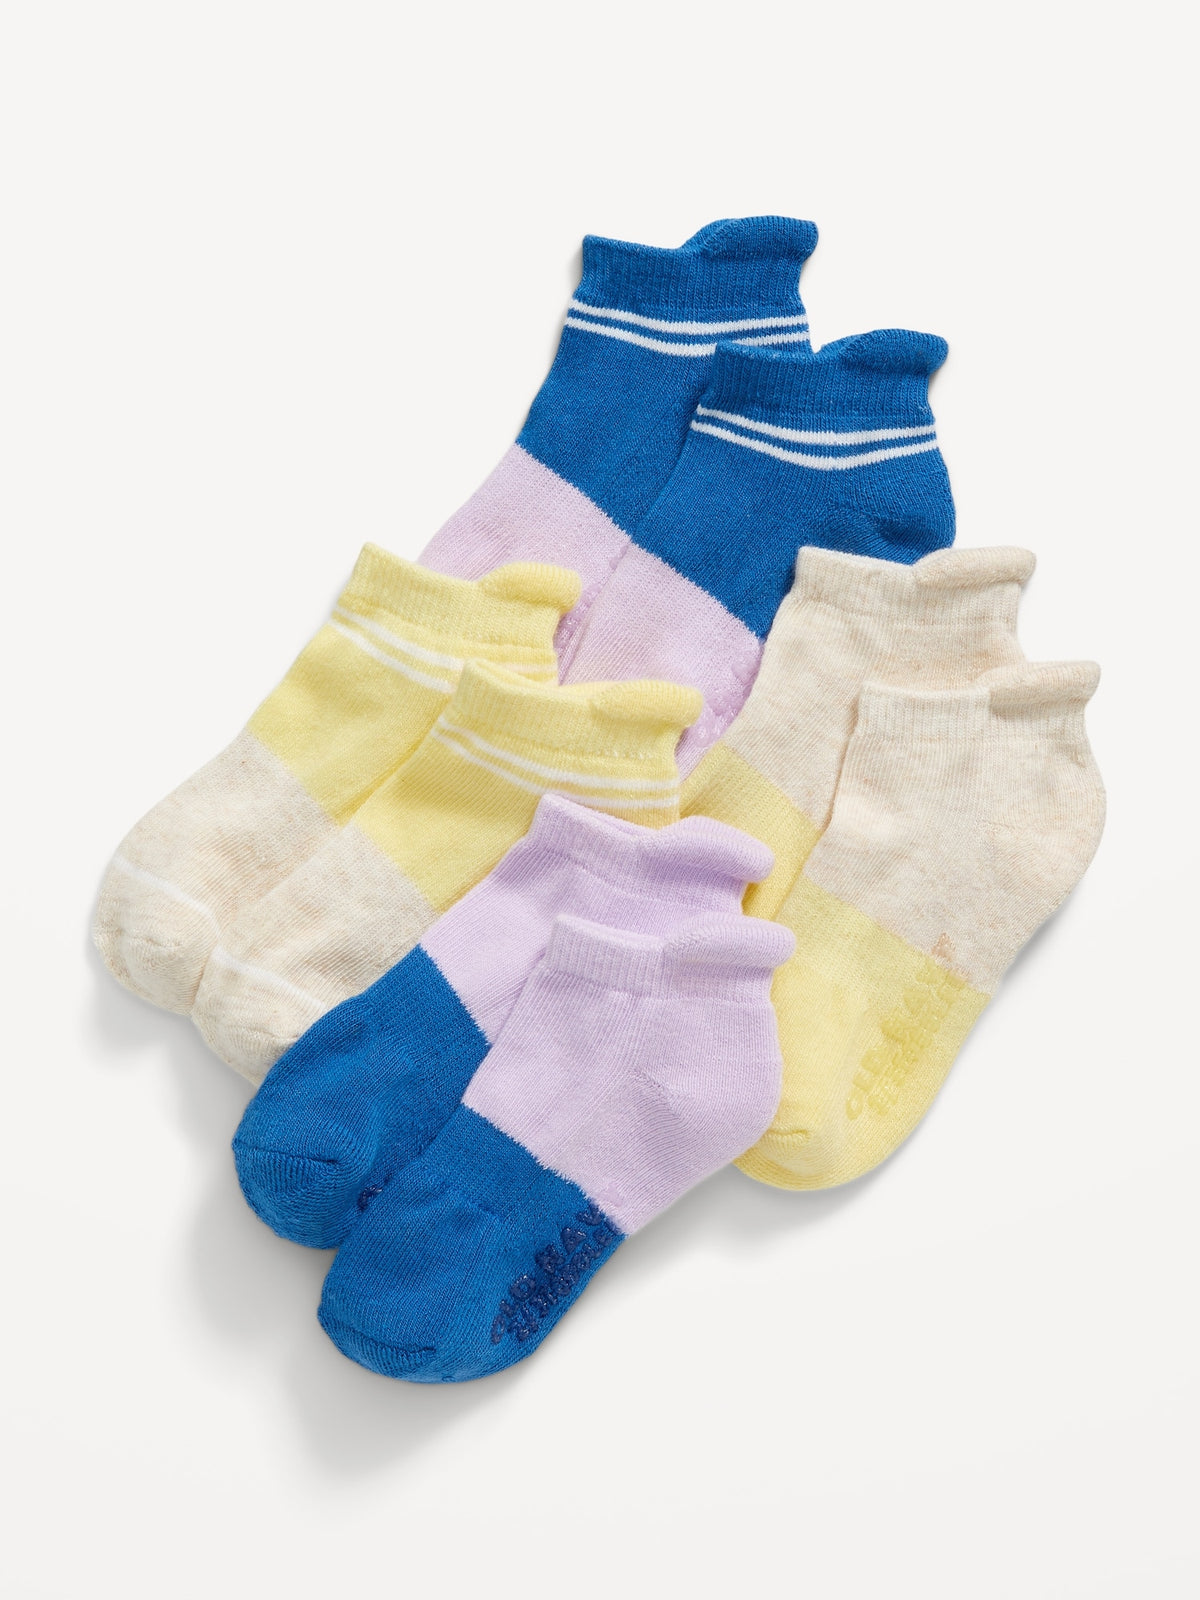 Unisex 4-Pack Ankle Socks for Toddler &amp; Baby